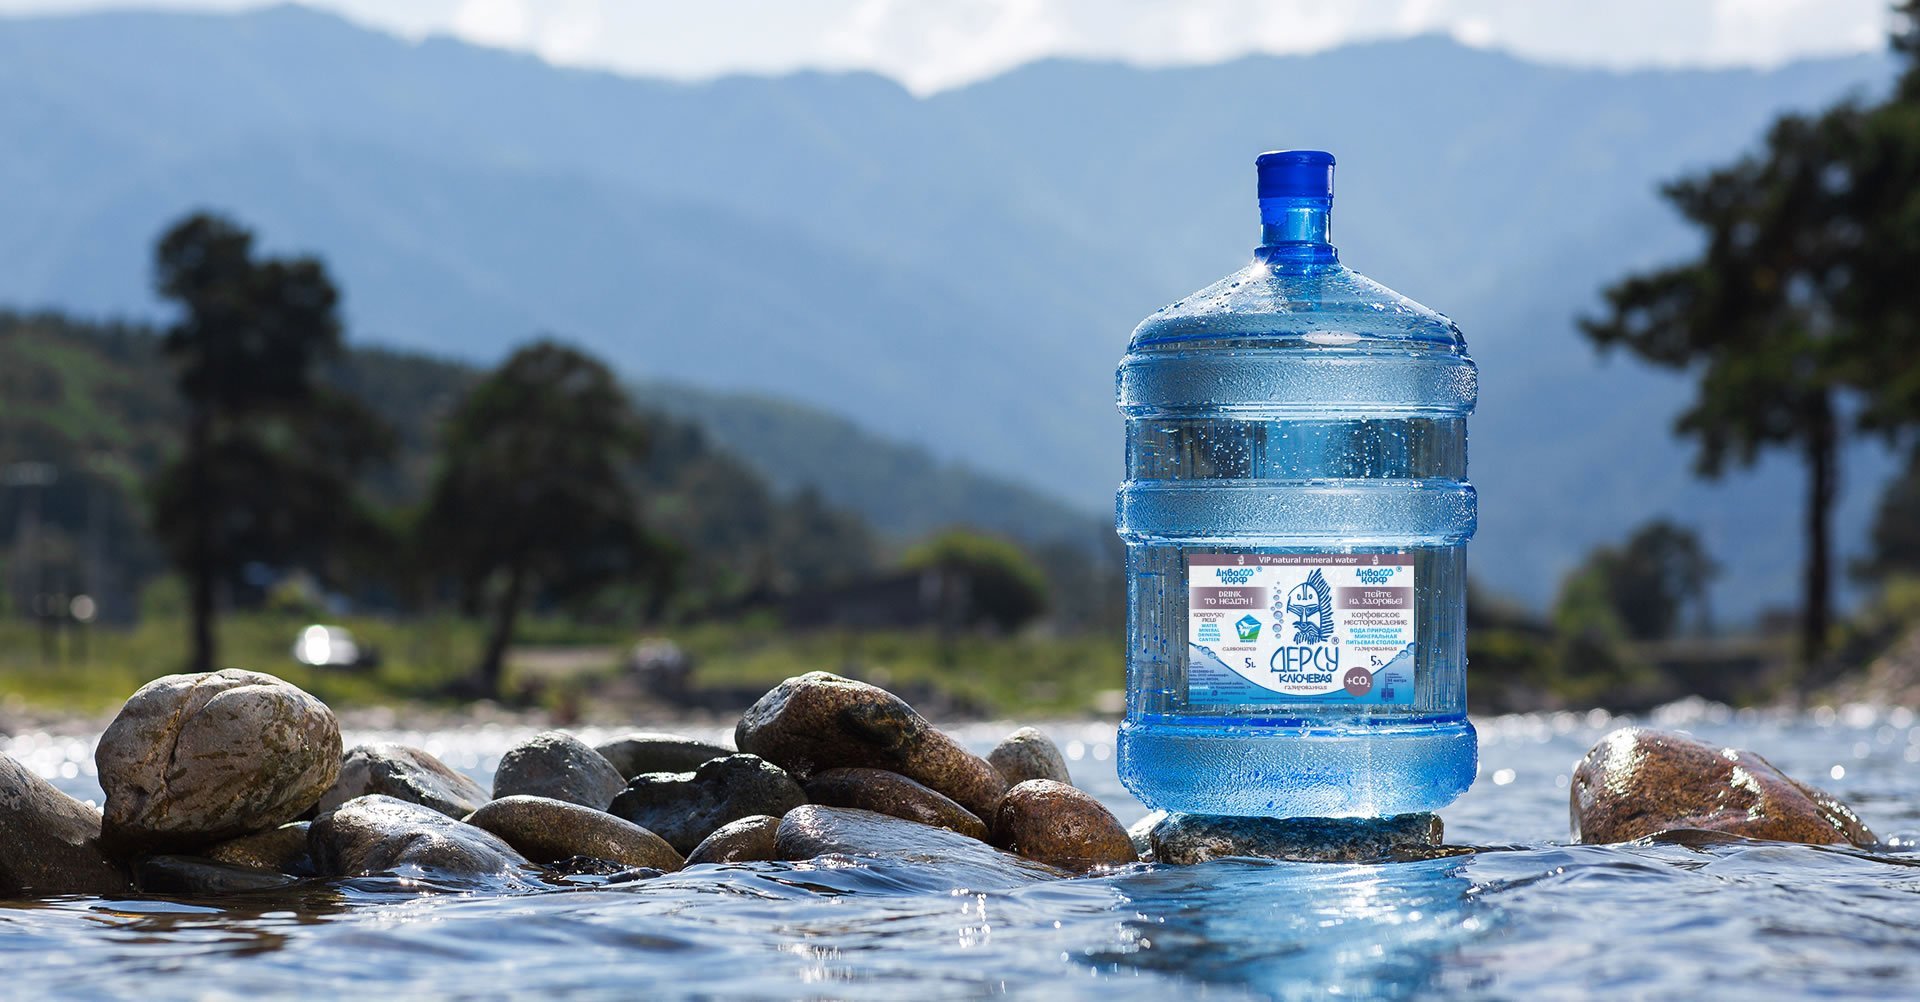 Бесплатная питьевая вода. Бутылка для воды. Вода в бутылях. Питье воды. Чистая вода.